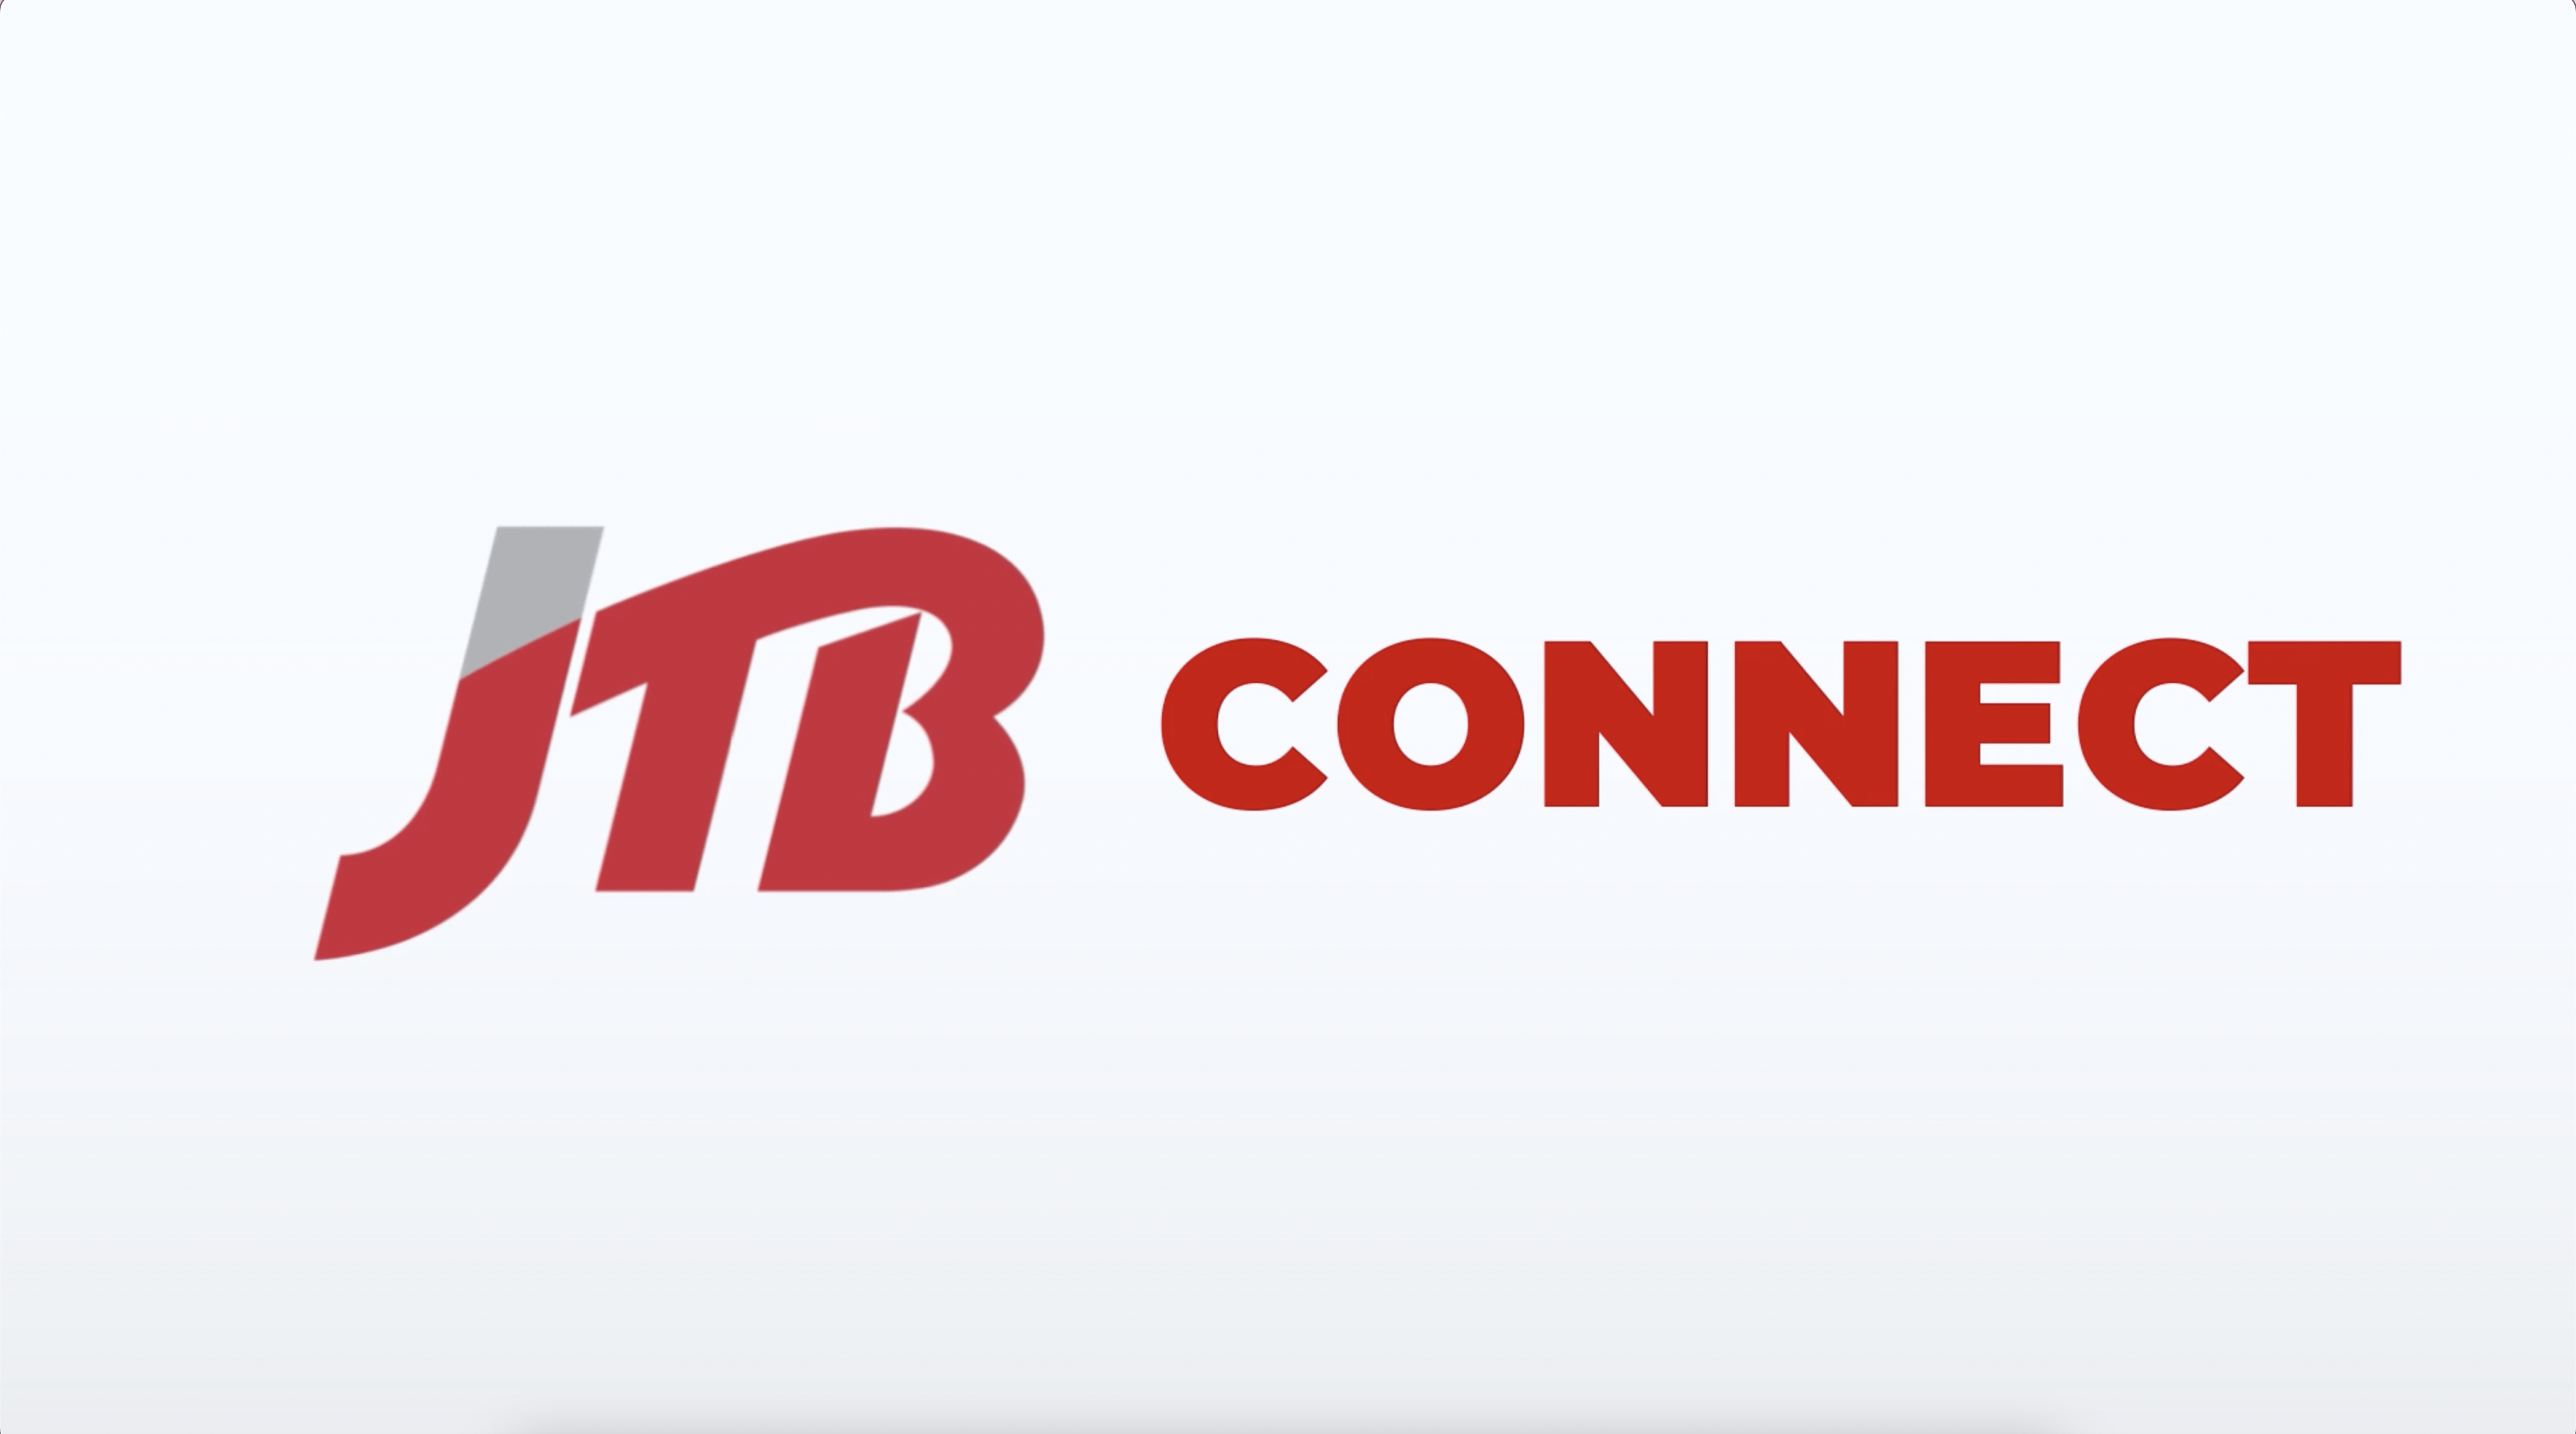 JTB Connect - Explainer Video